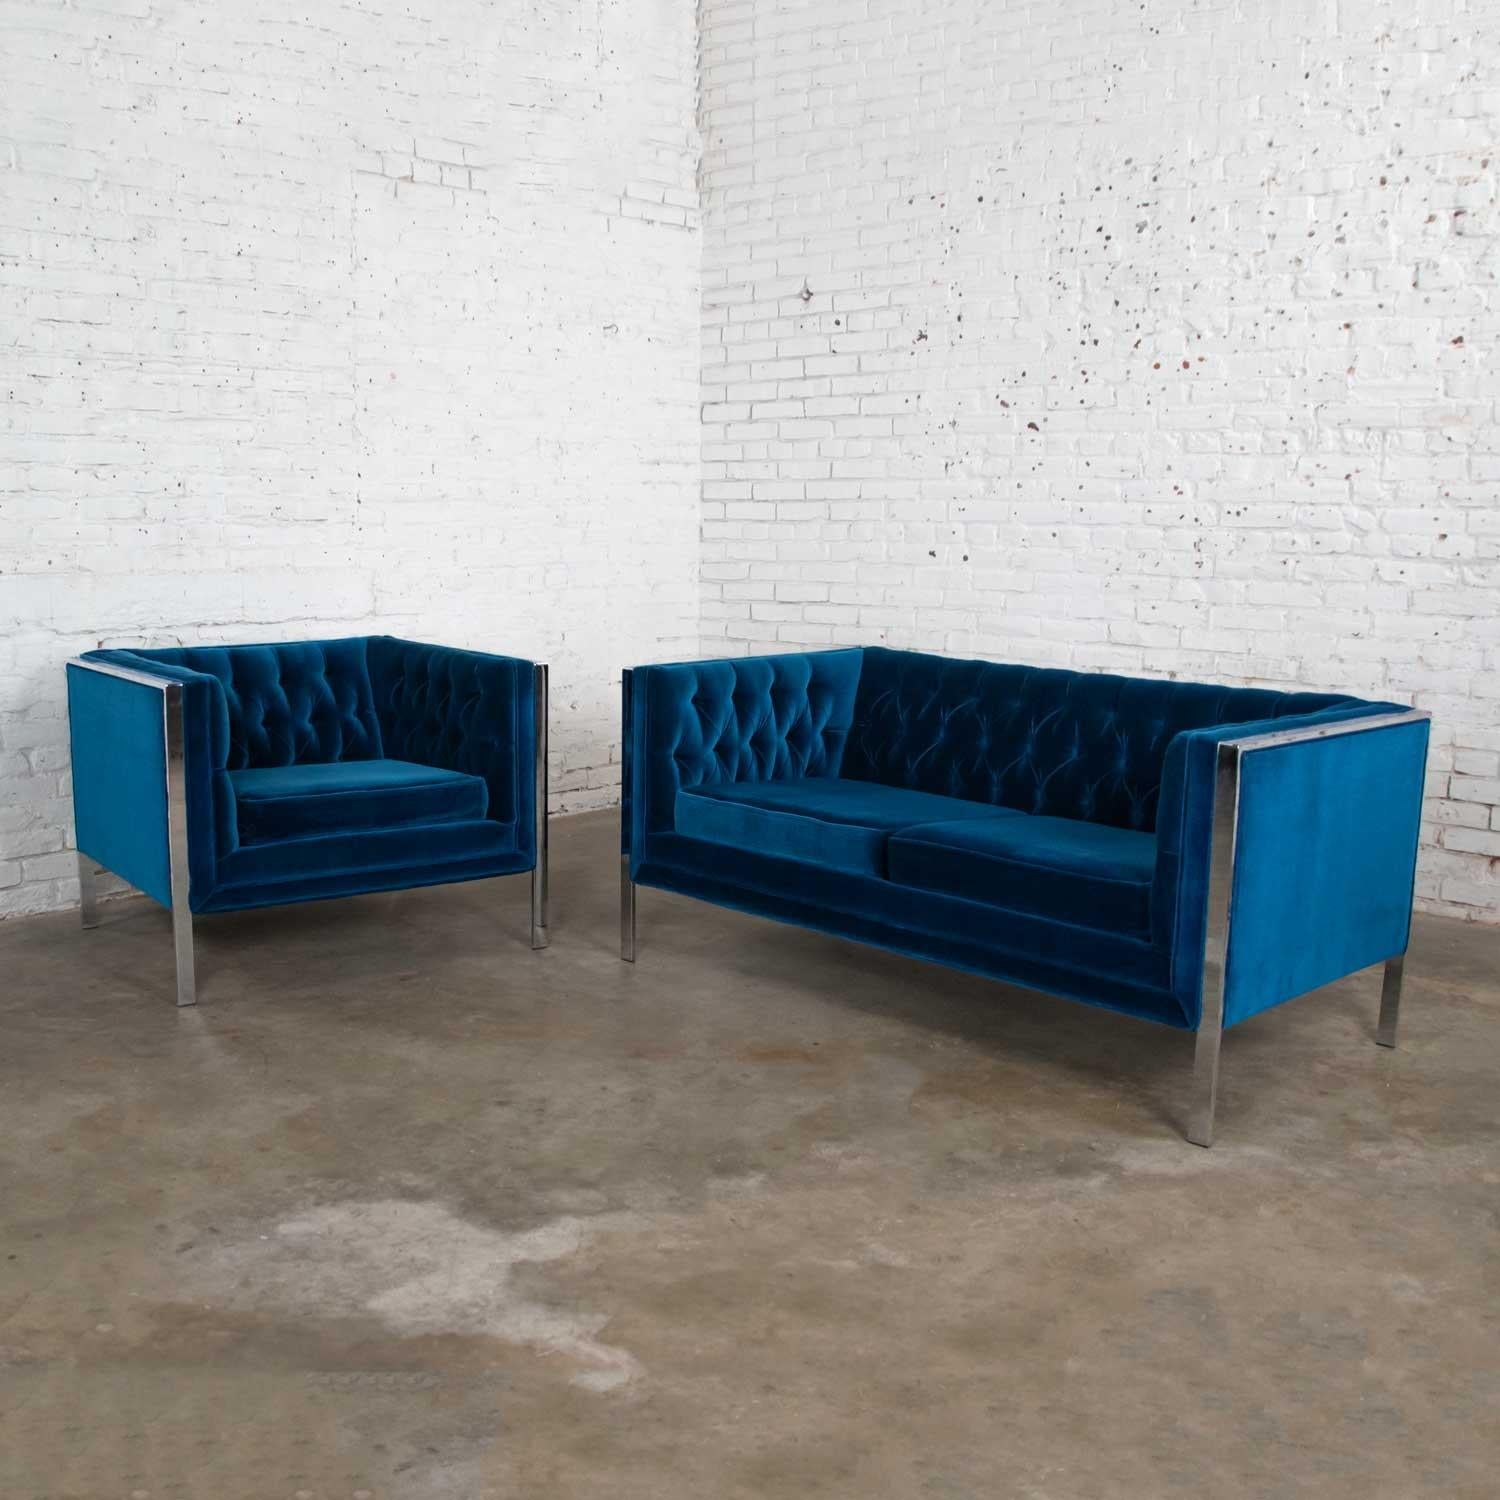 Magnifique causeuse et fauteuil MCM en velours bleu royal et chrome d'après Milo Baughman. Composé d'un cadre chromé et d'accoudoirs et de dossiers de sièges intérieurs tuftés ou à boutons. Bel état vintage. Il y a quelques endroits où l'on peut